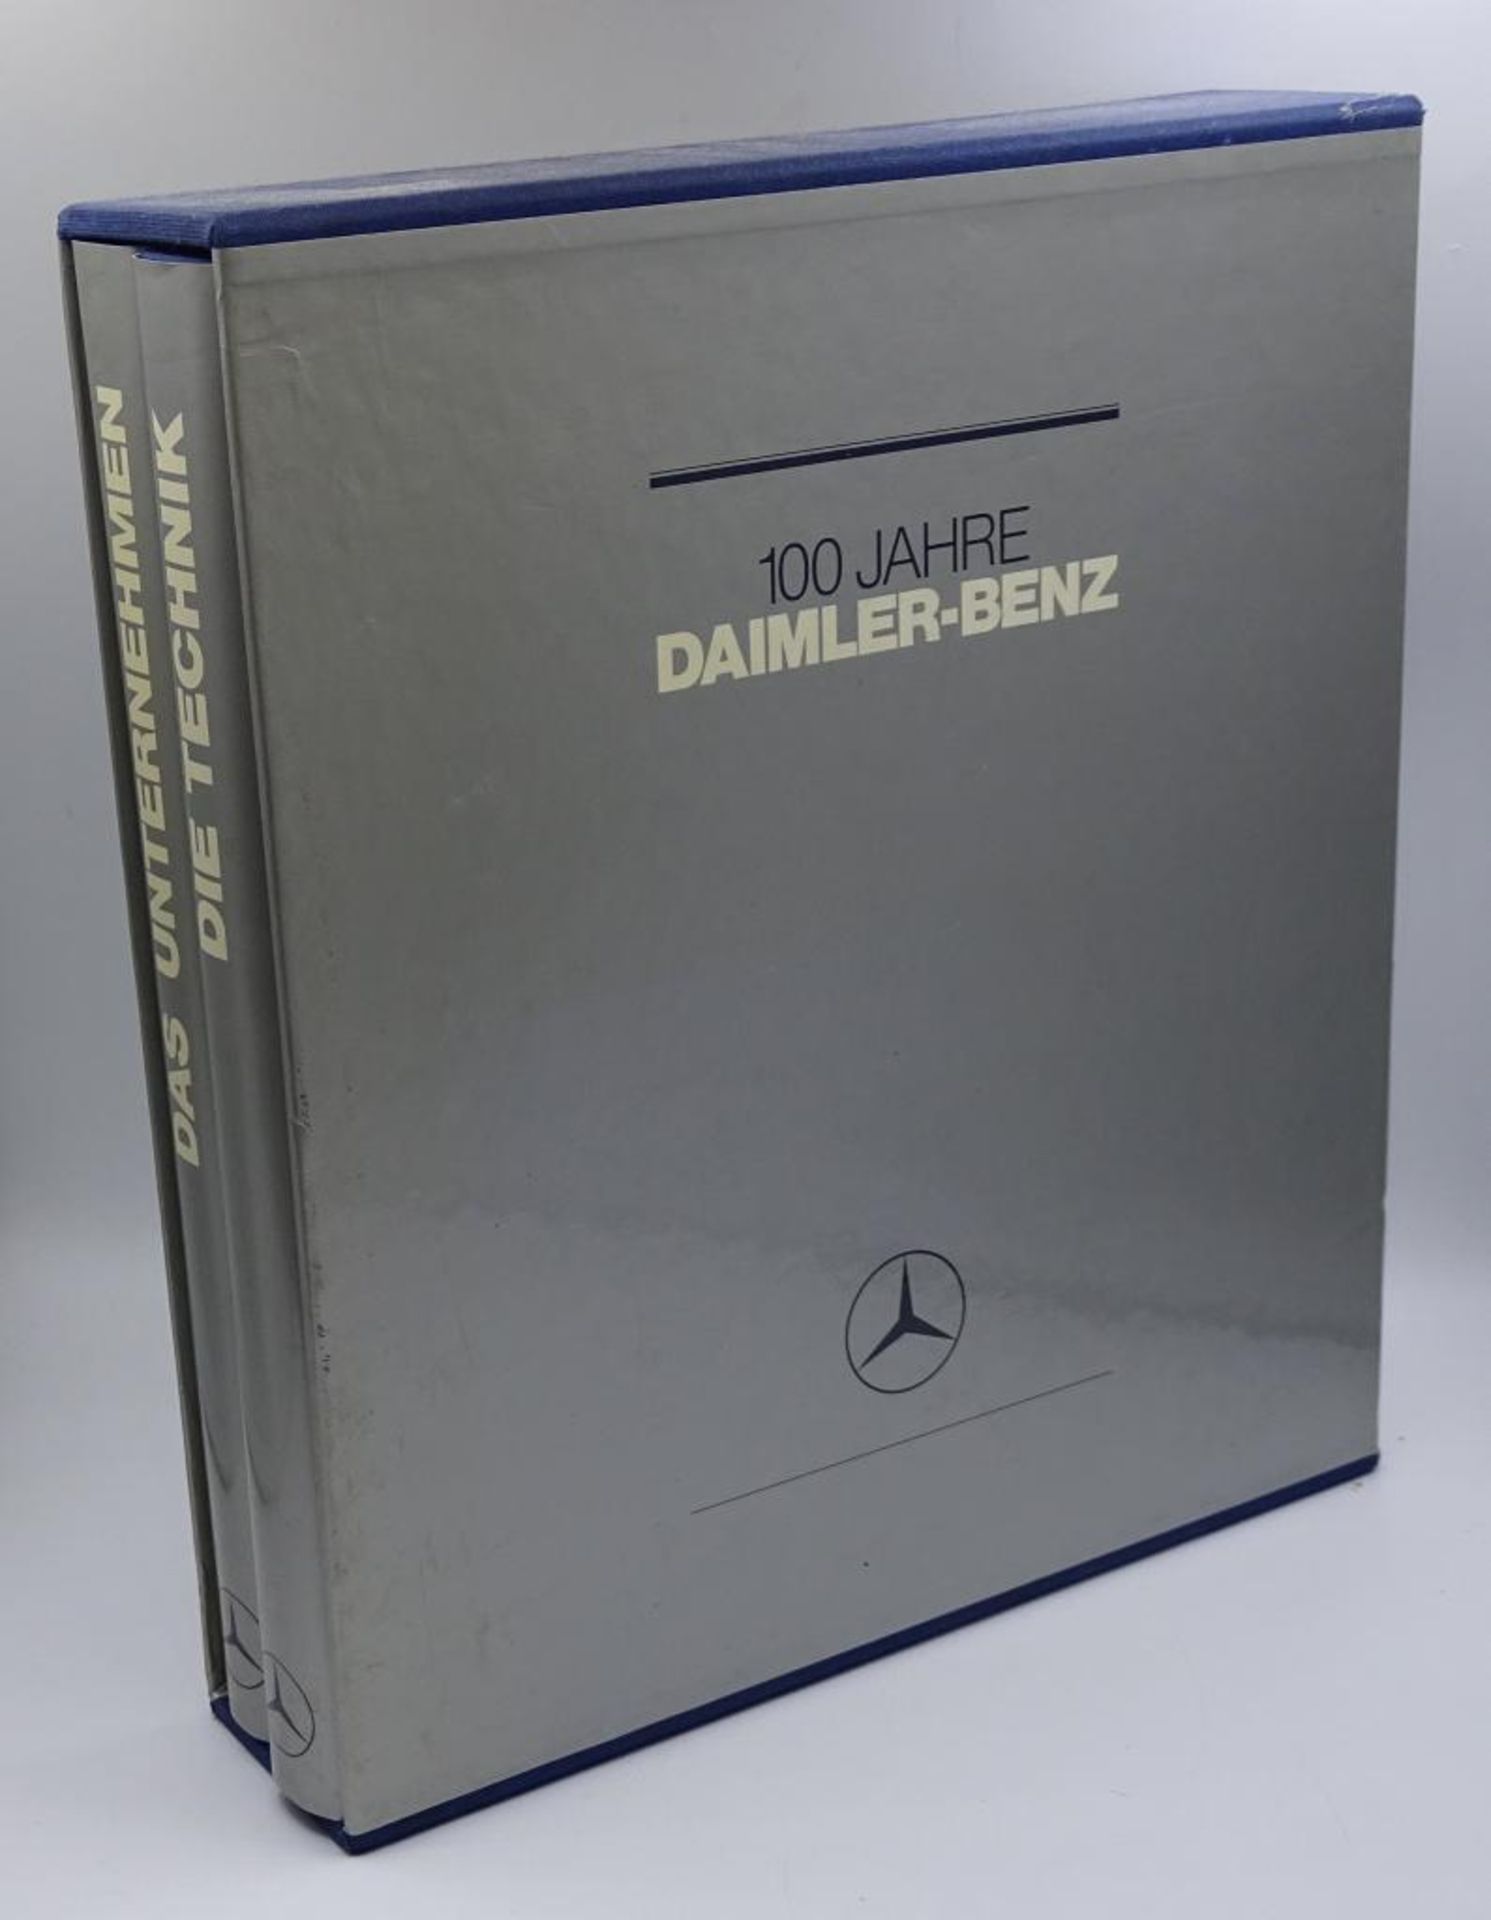 100 Jahre Daimler-Bezn, Zwei Bände, "Die Technik und das Unternehmen", 1986,im Schube